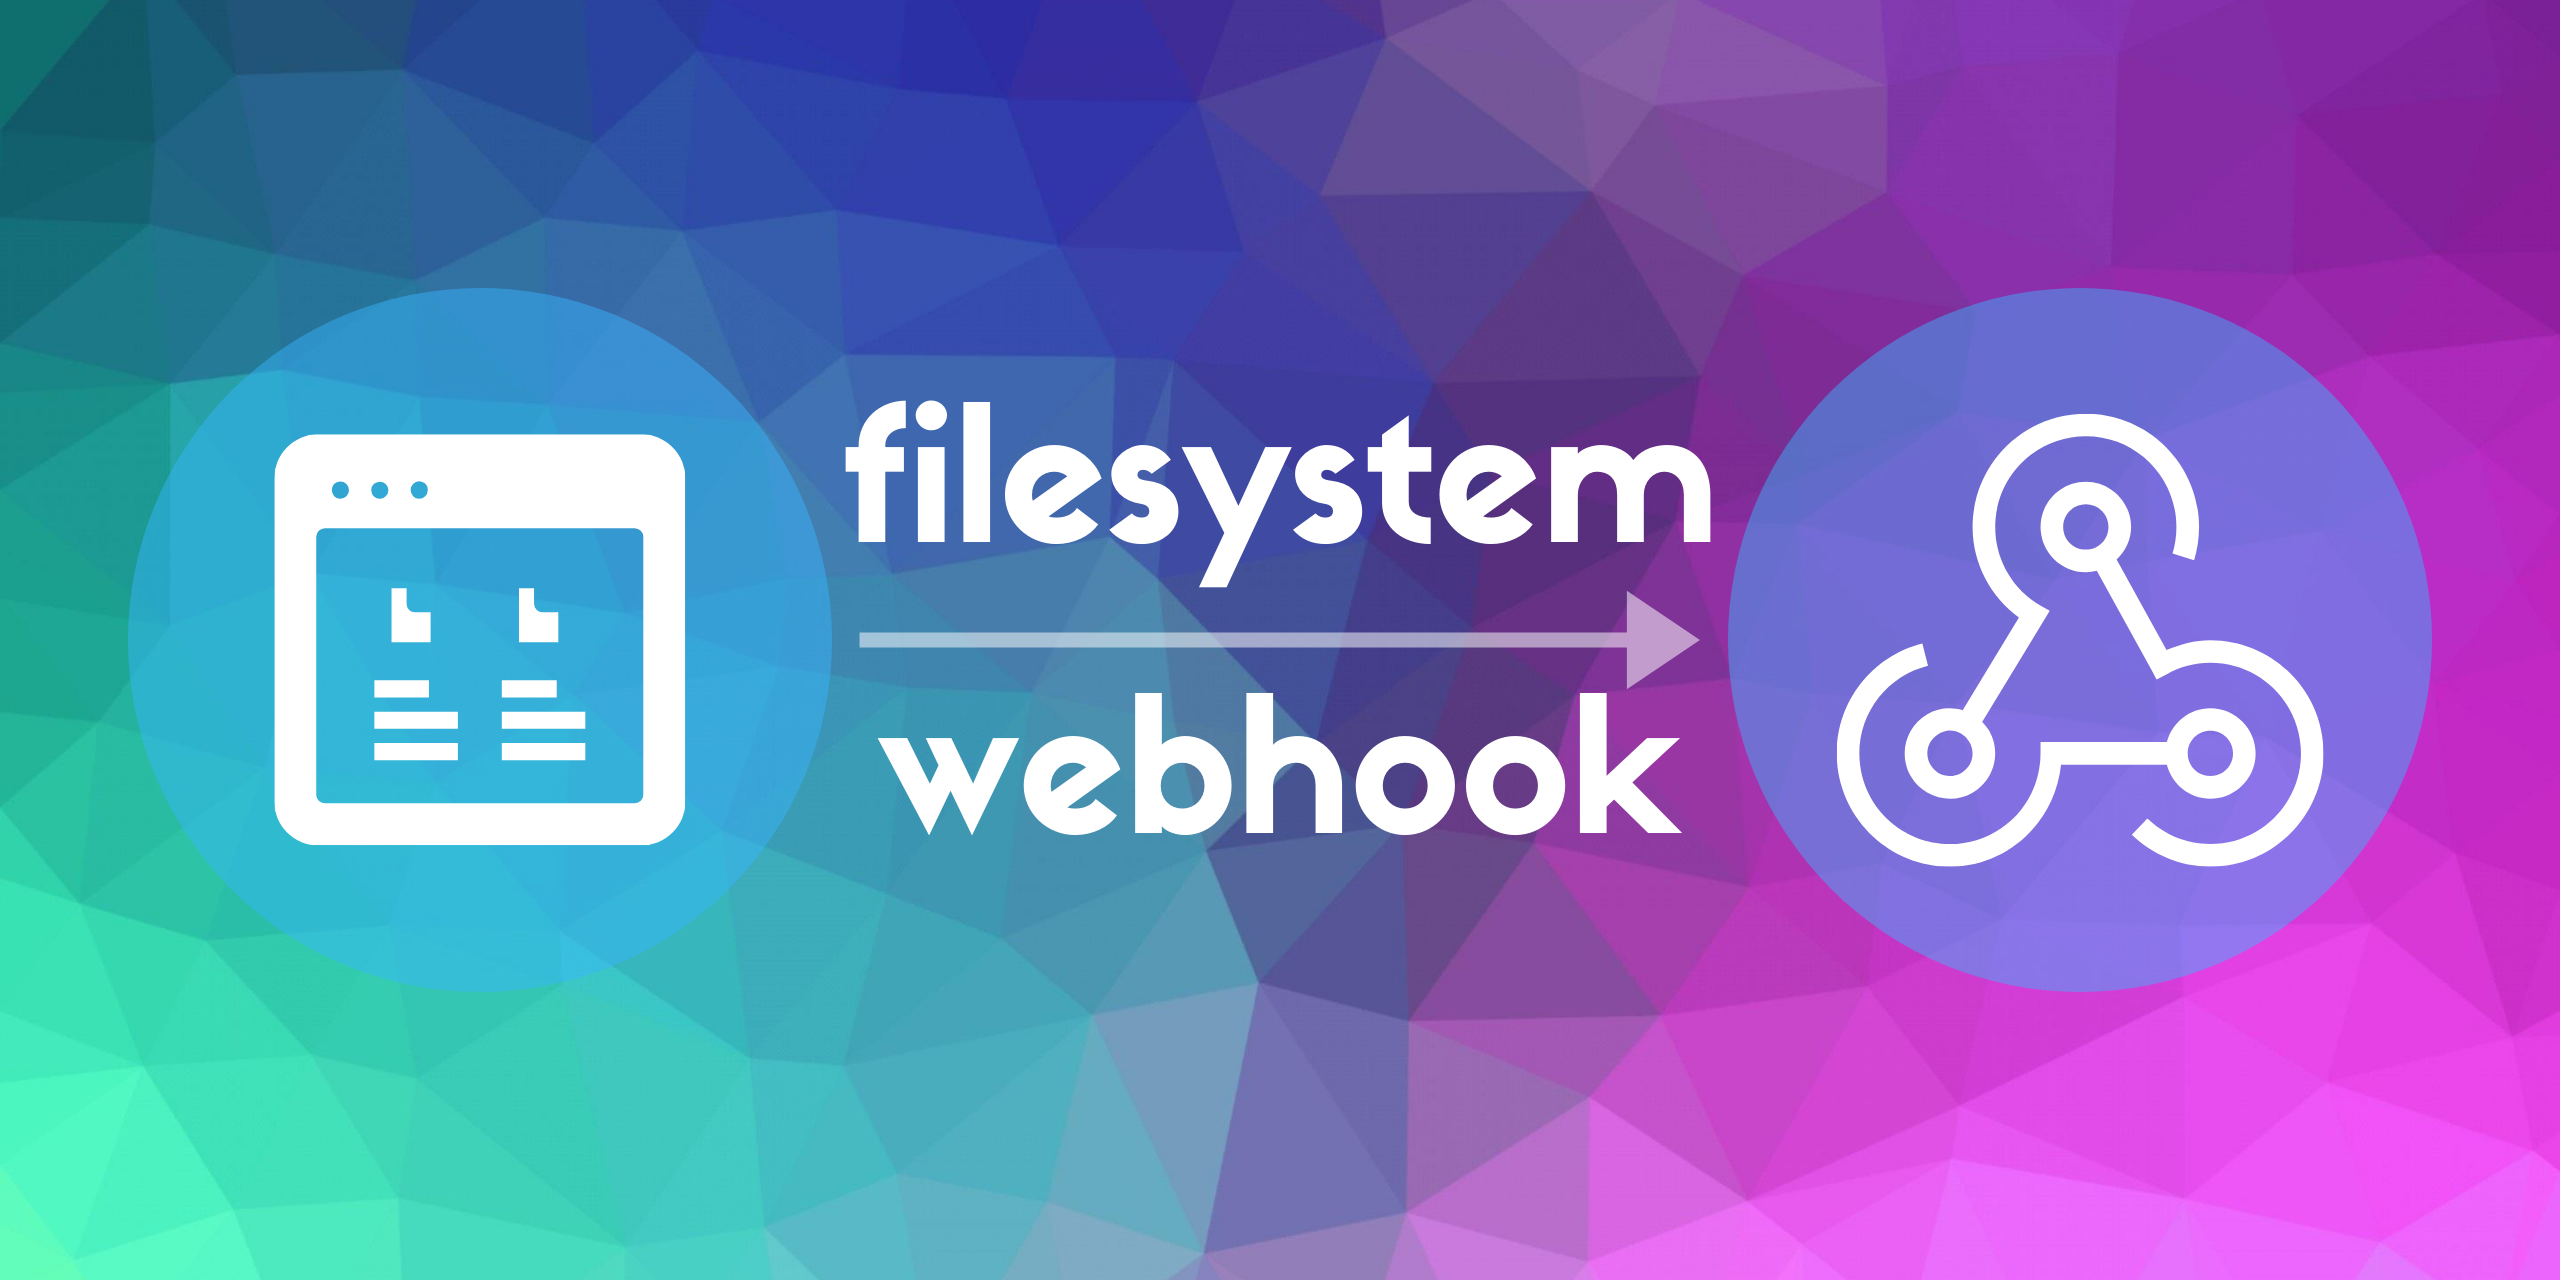 filesystem-webhook